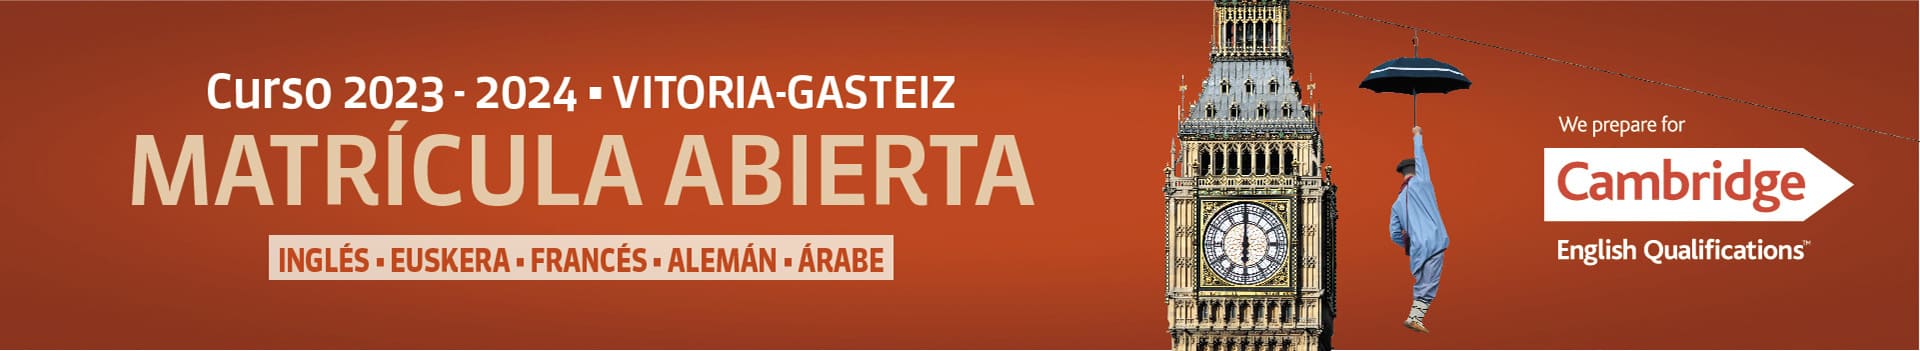 Curso 2023-2024 Vitoria-Gasteiz, Matrícula Abierta, Inglés, Euskera, Francés, Alemán, Arabe